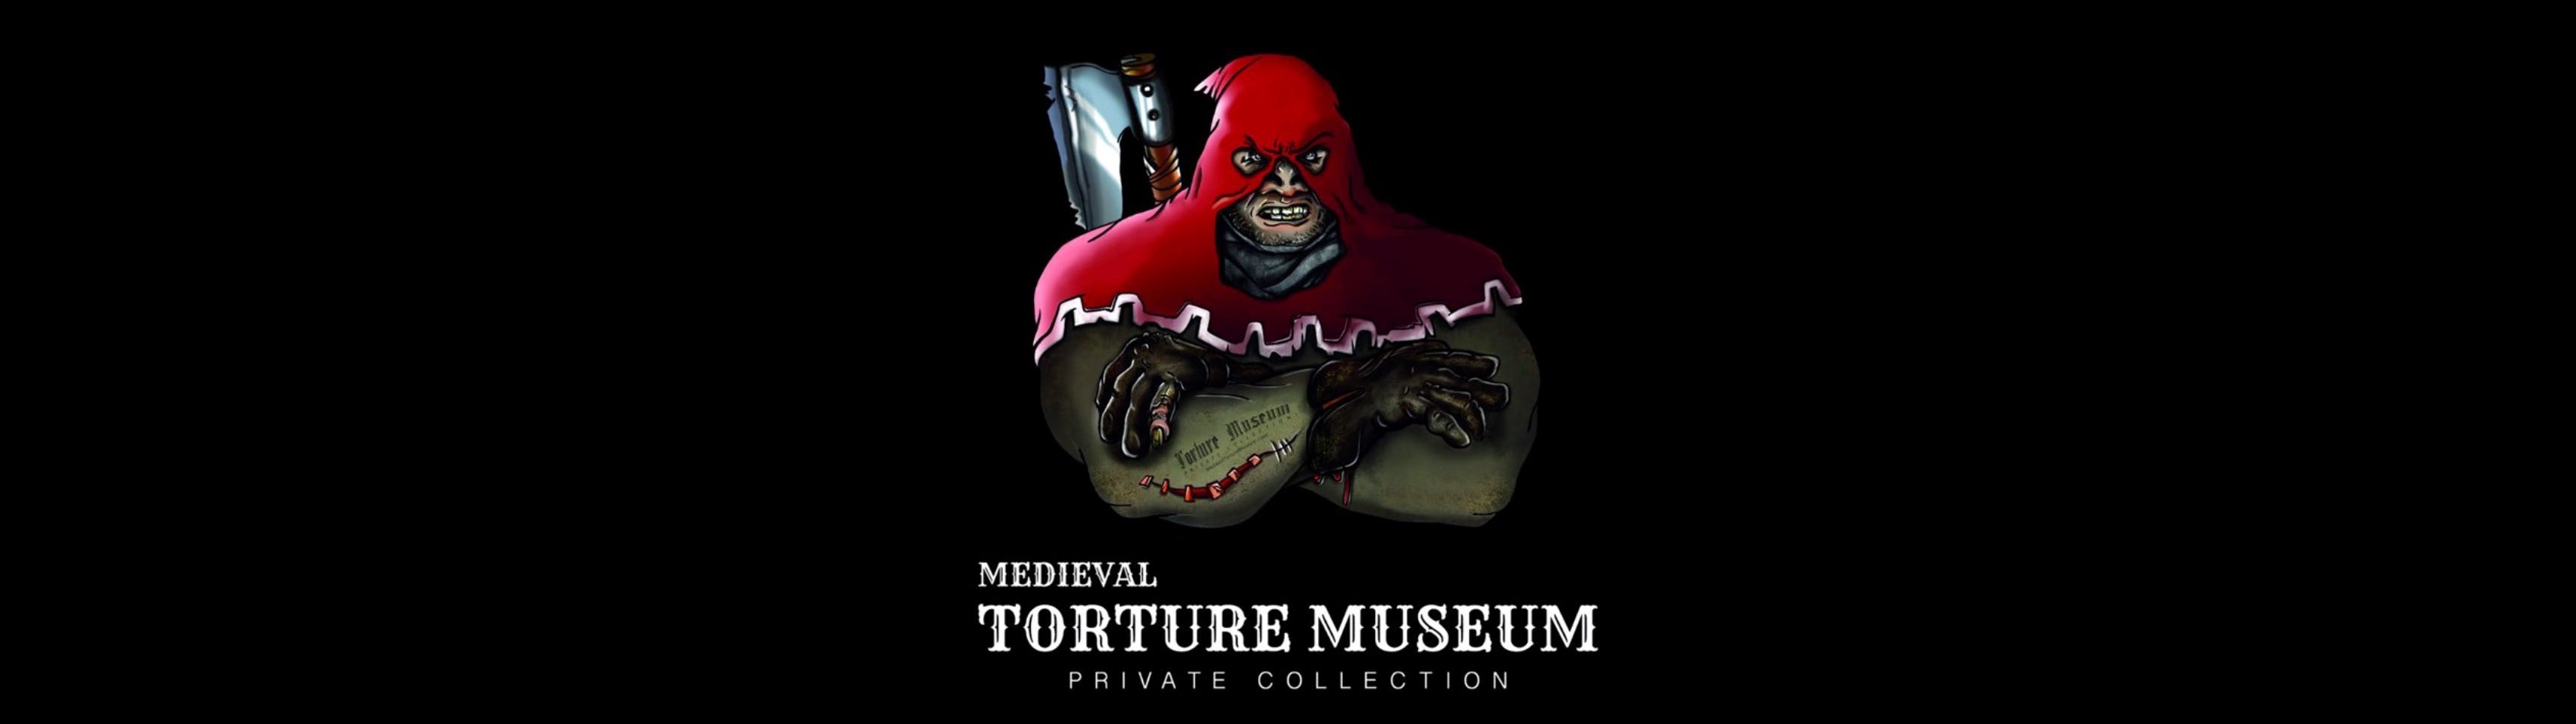 Museo della tortura medievale con audioguida, esperienza di caccia ai fantasmi e biglietto per la Tiny Art Gallery